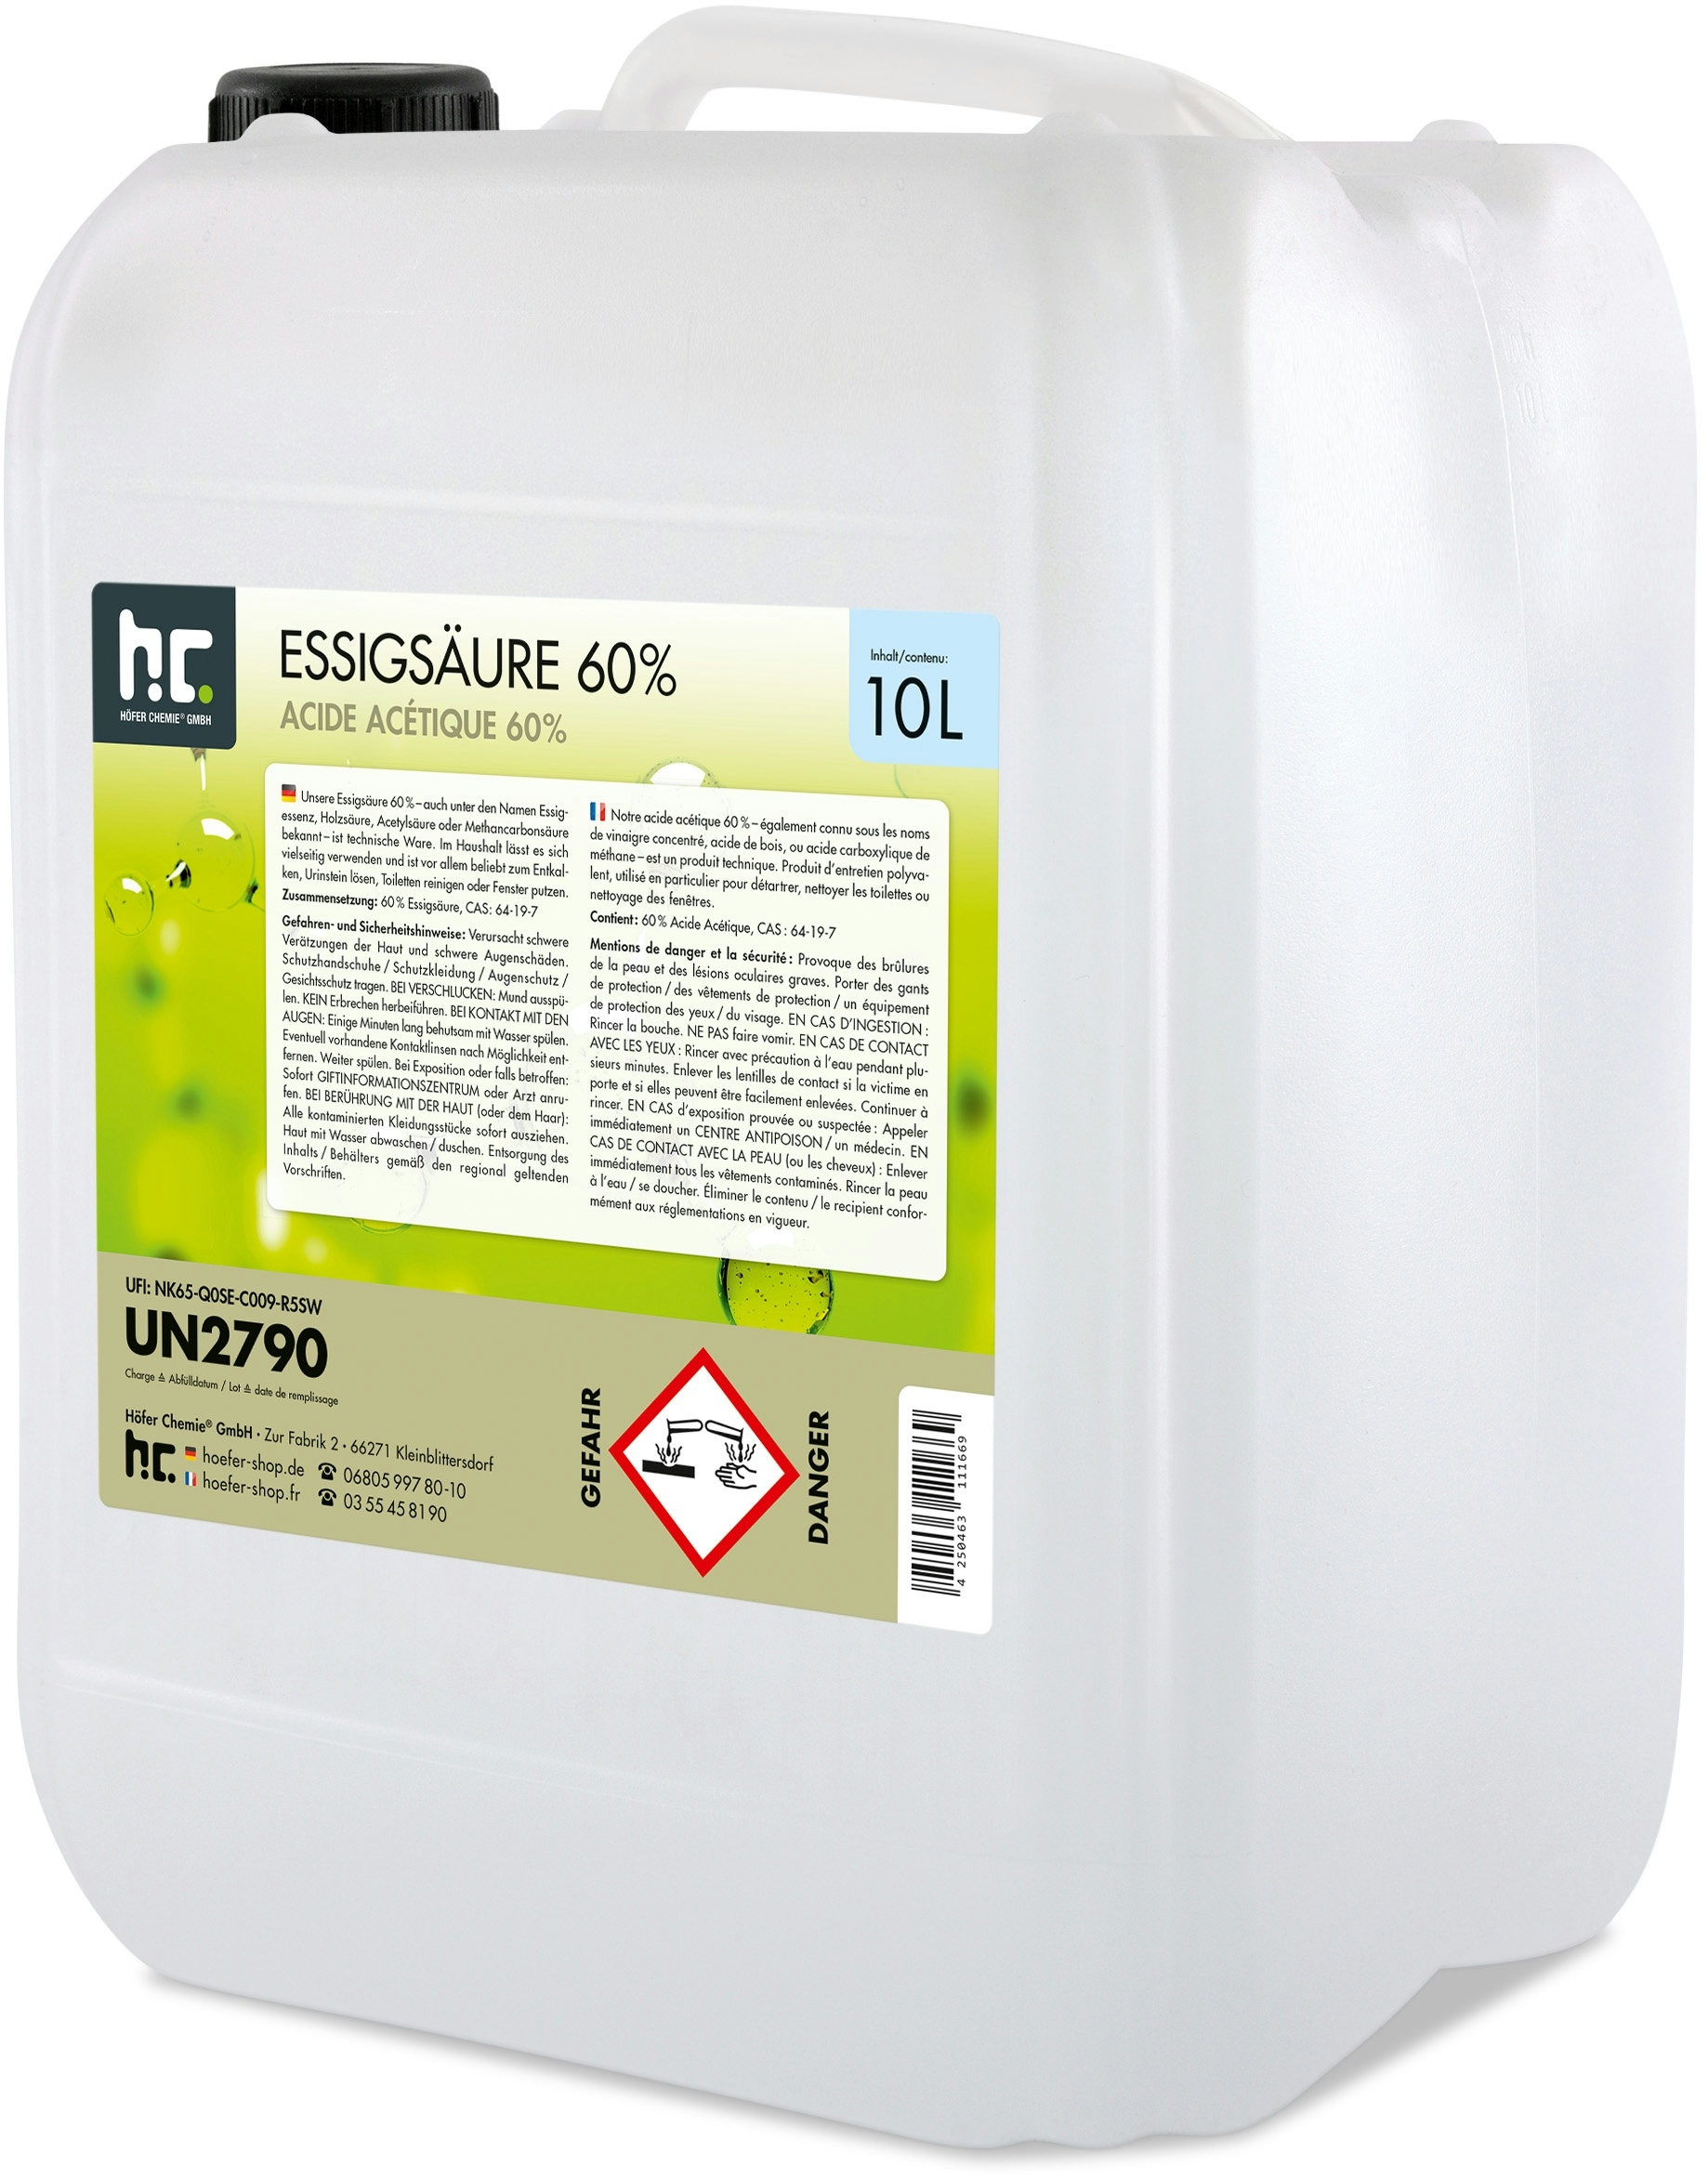 Höfer Chemie 4 x 10 Liter Essigsäure 60% in Kanistern